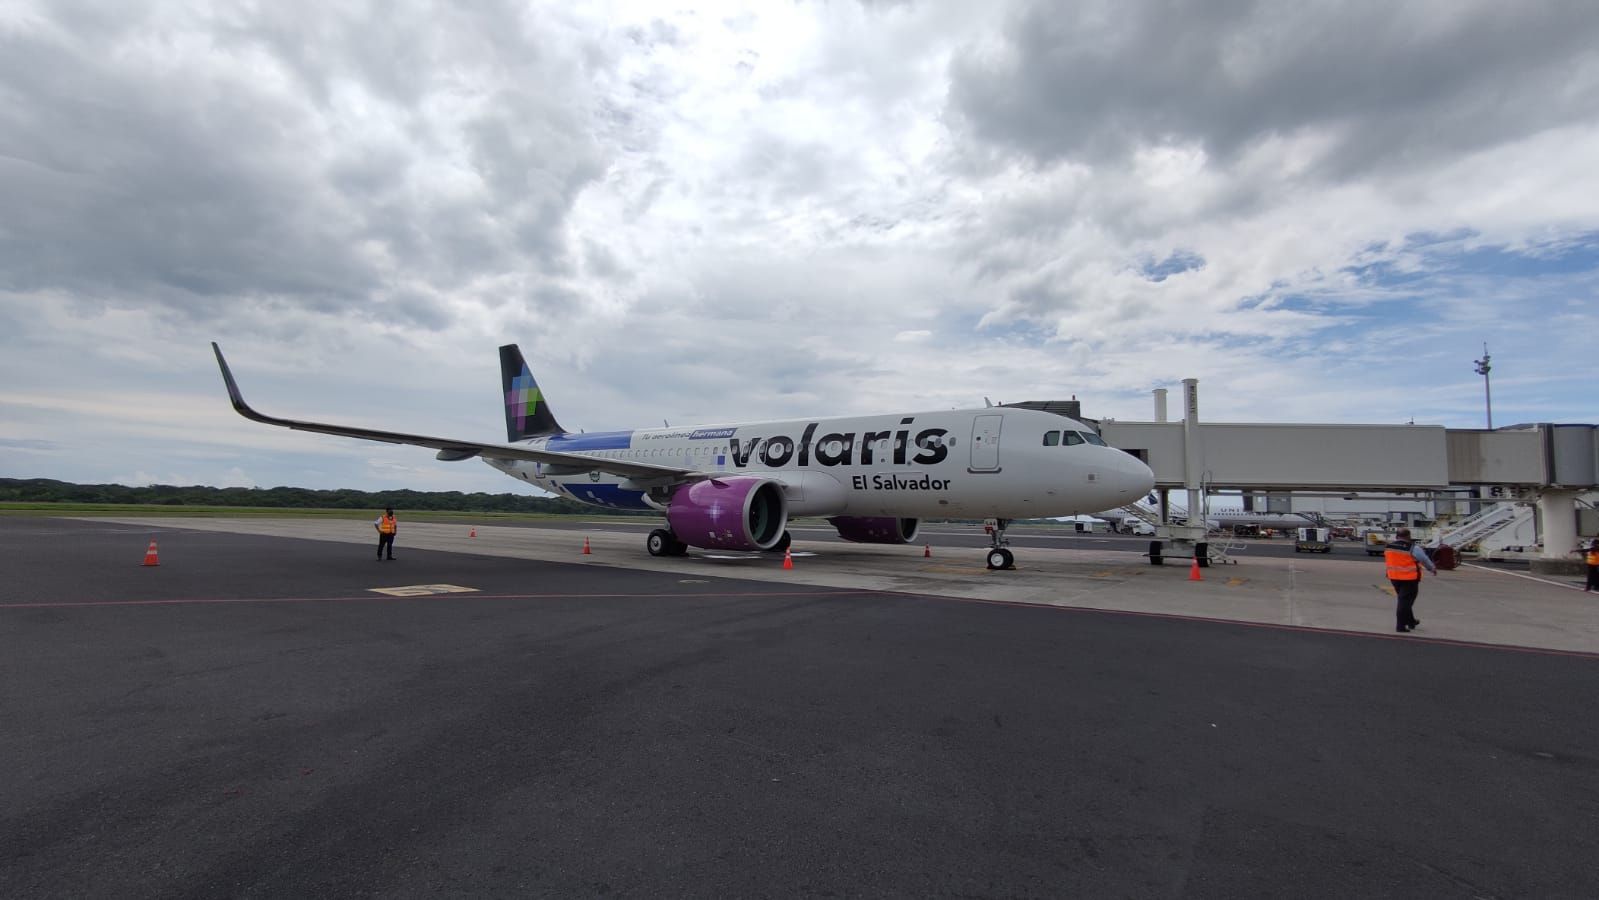 A Volaris El Salvador aircraft